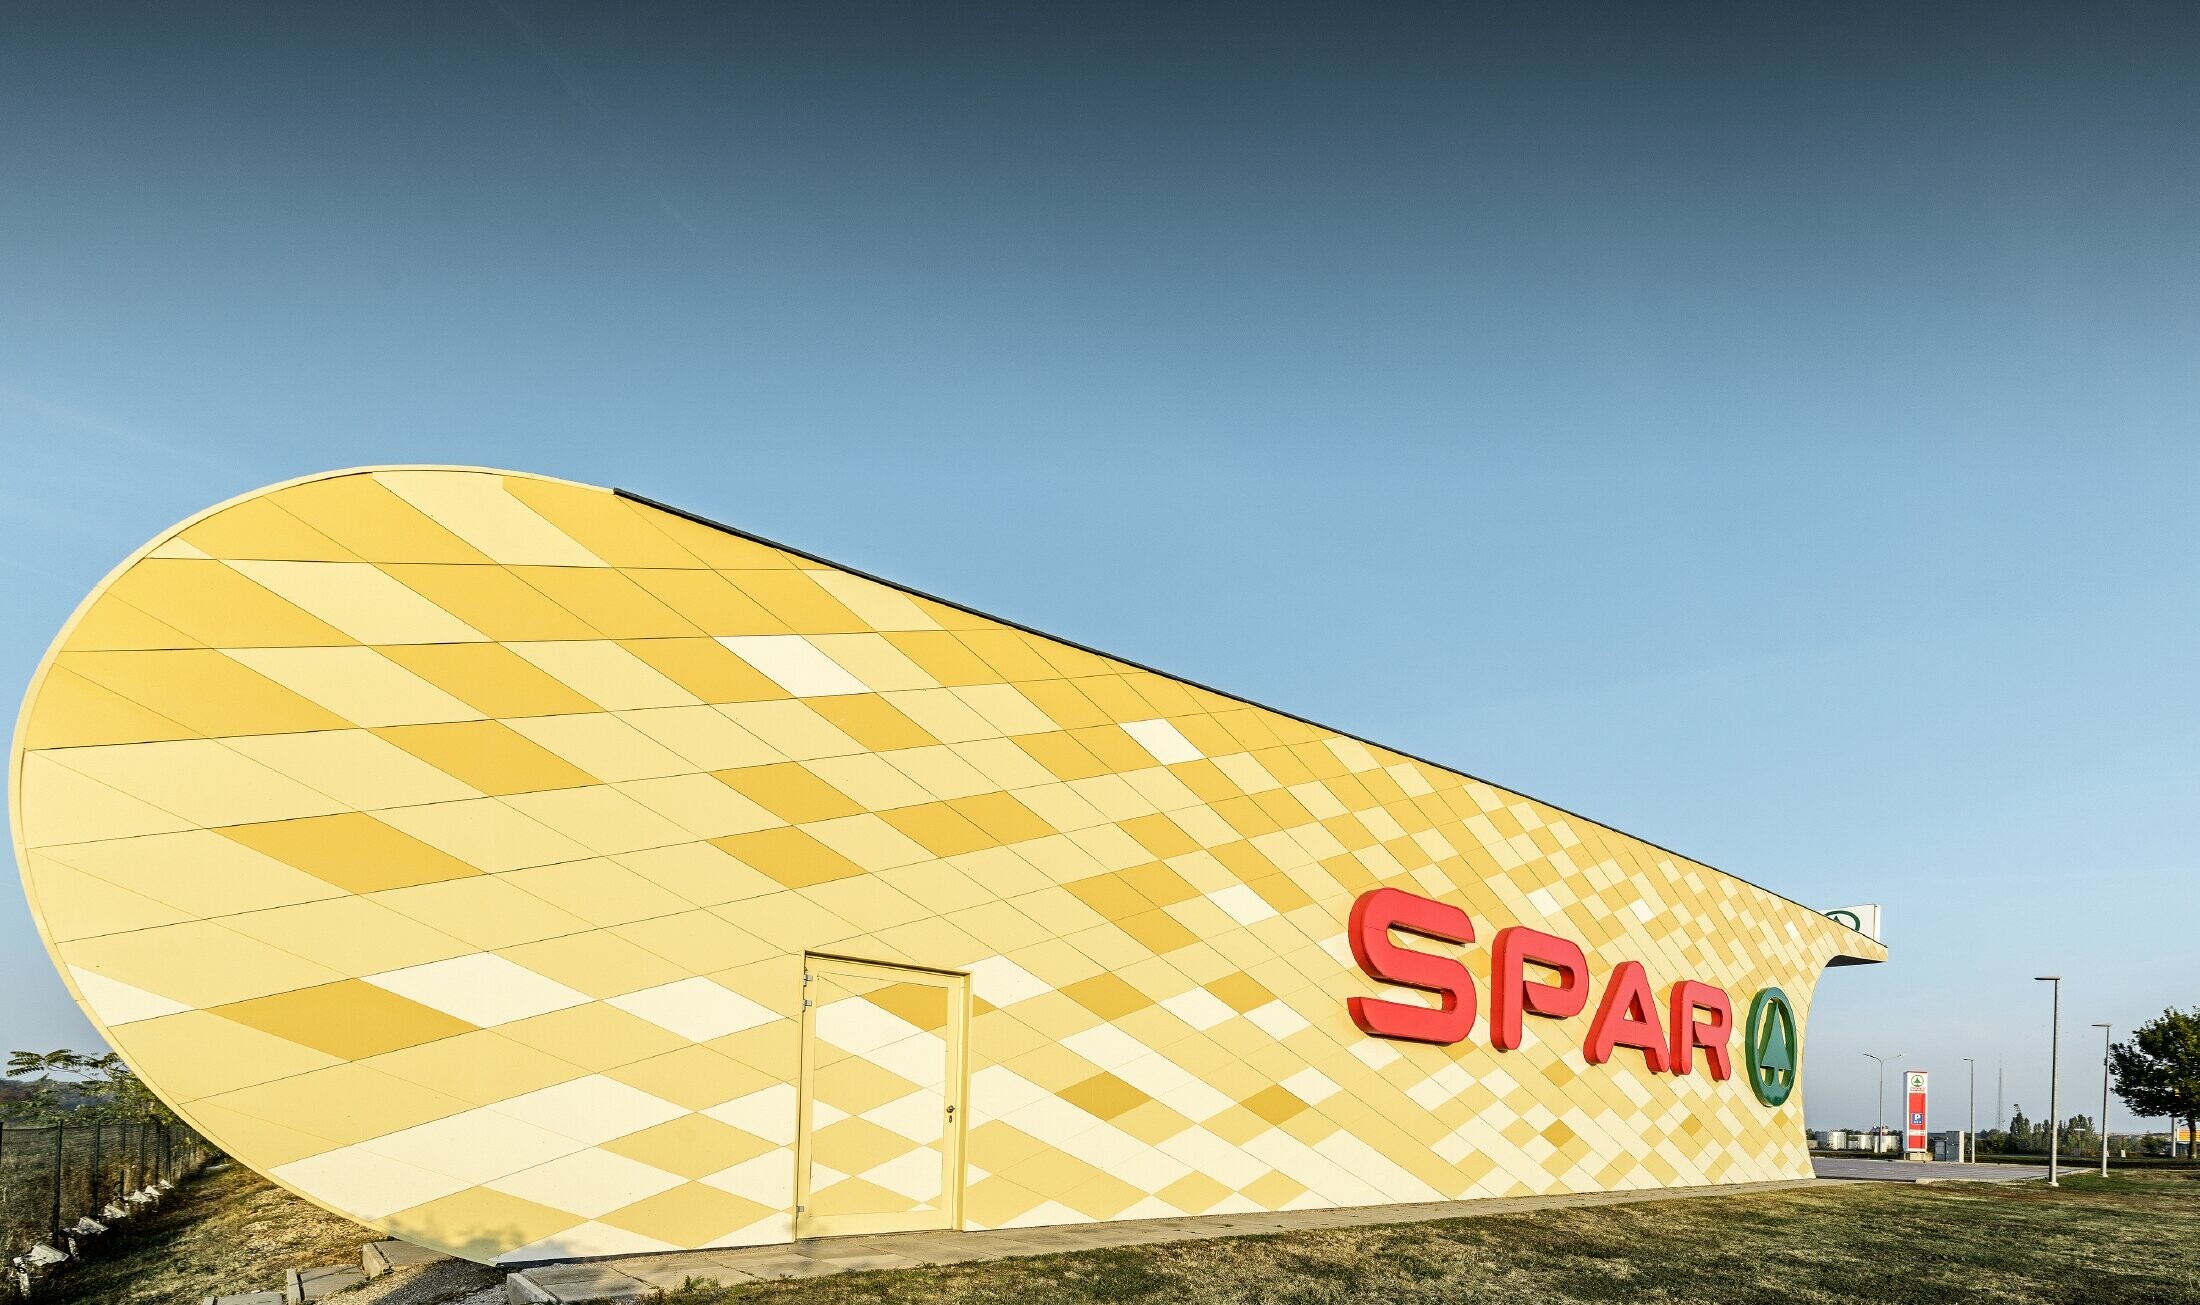 Spar Filiale mit einer Aluminiumfassade in gelb-orangen Karos und Spar Logo